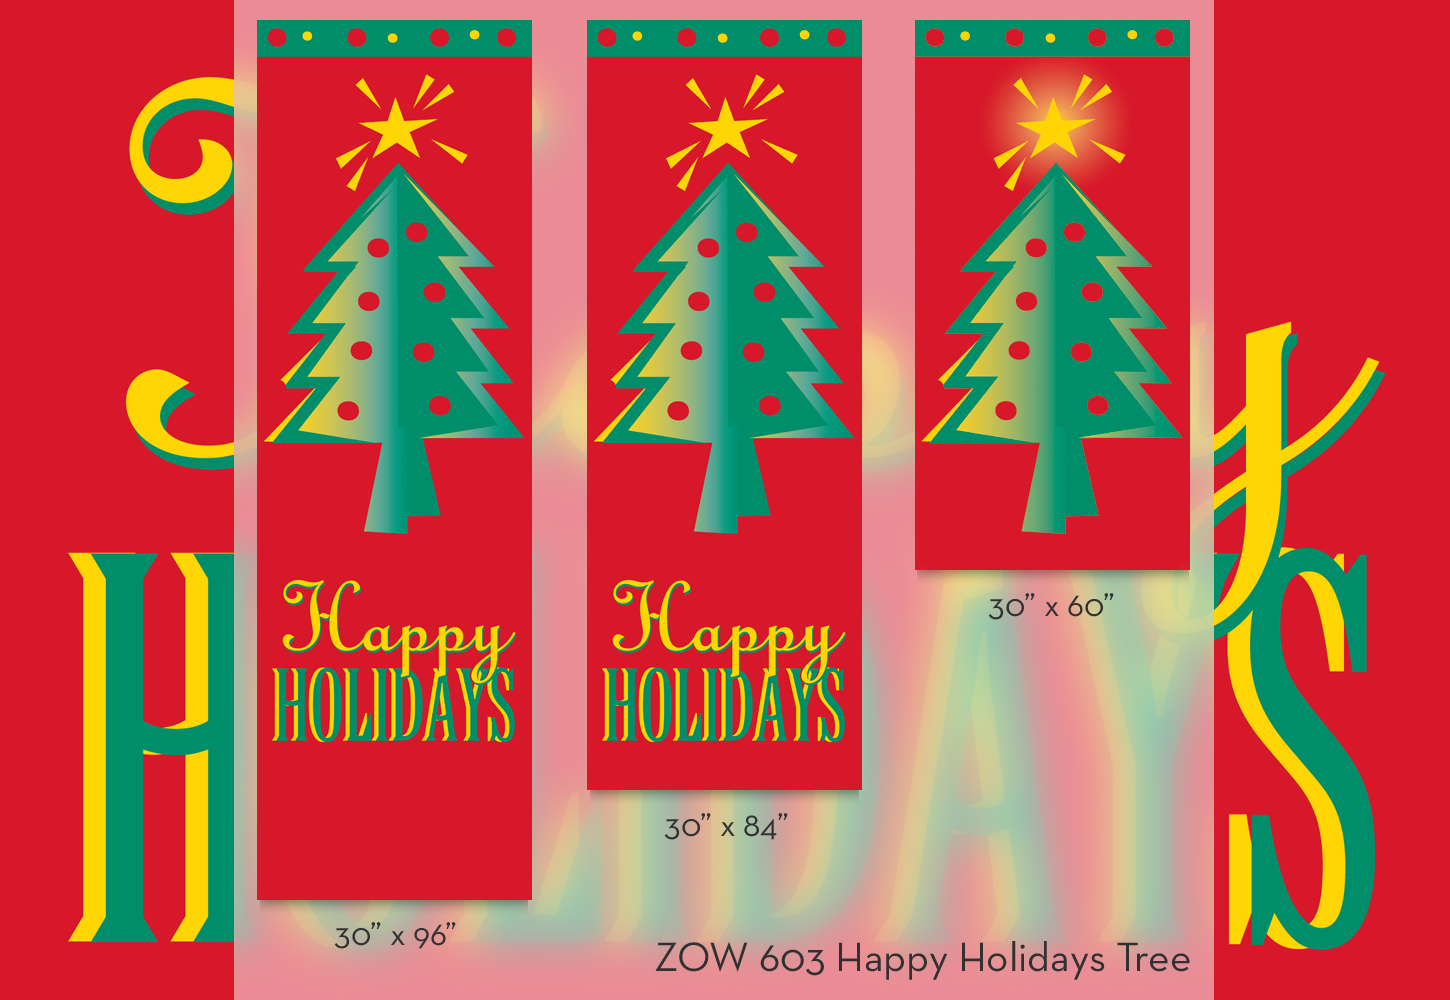 ZOW 603 Happy Holidays Tree